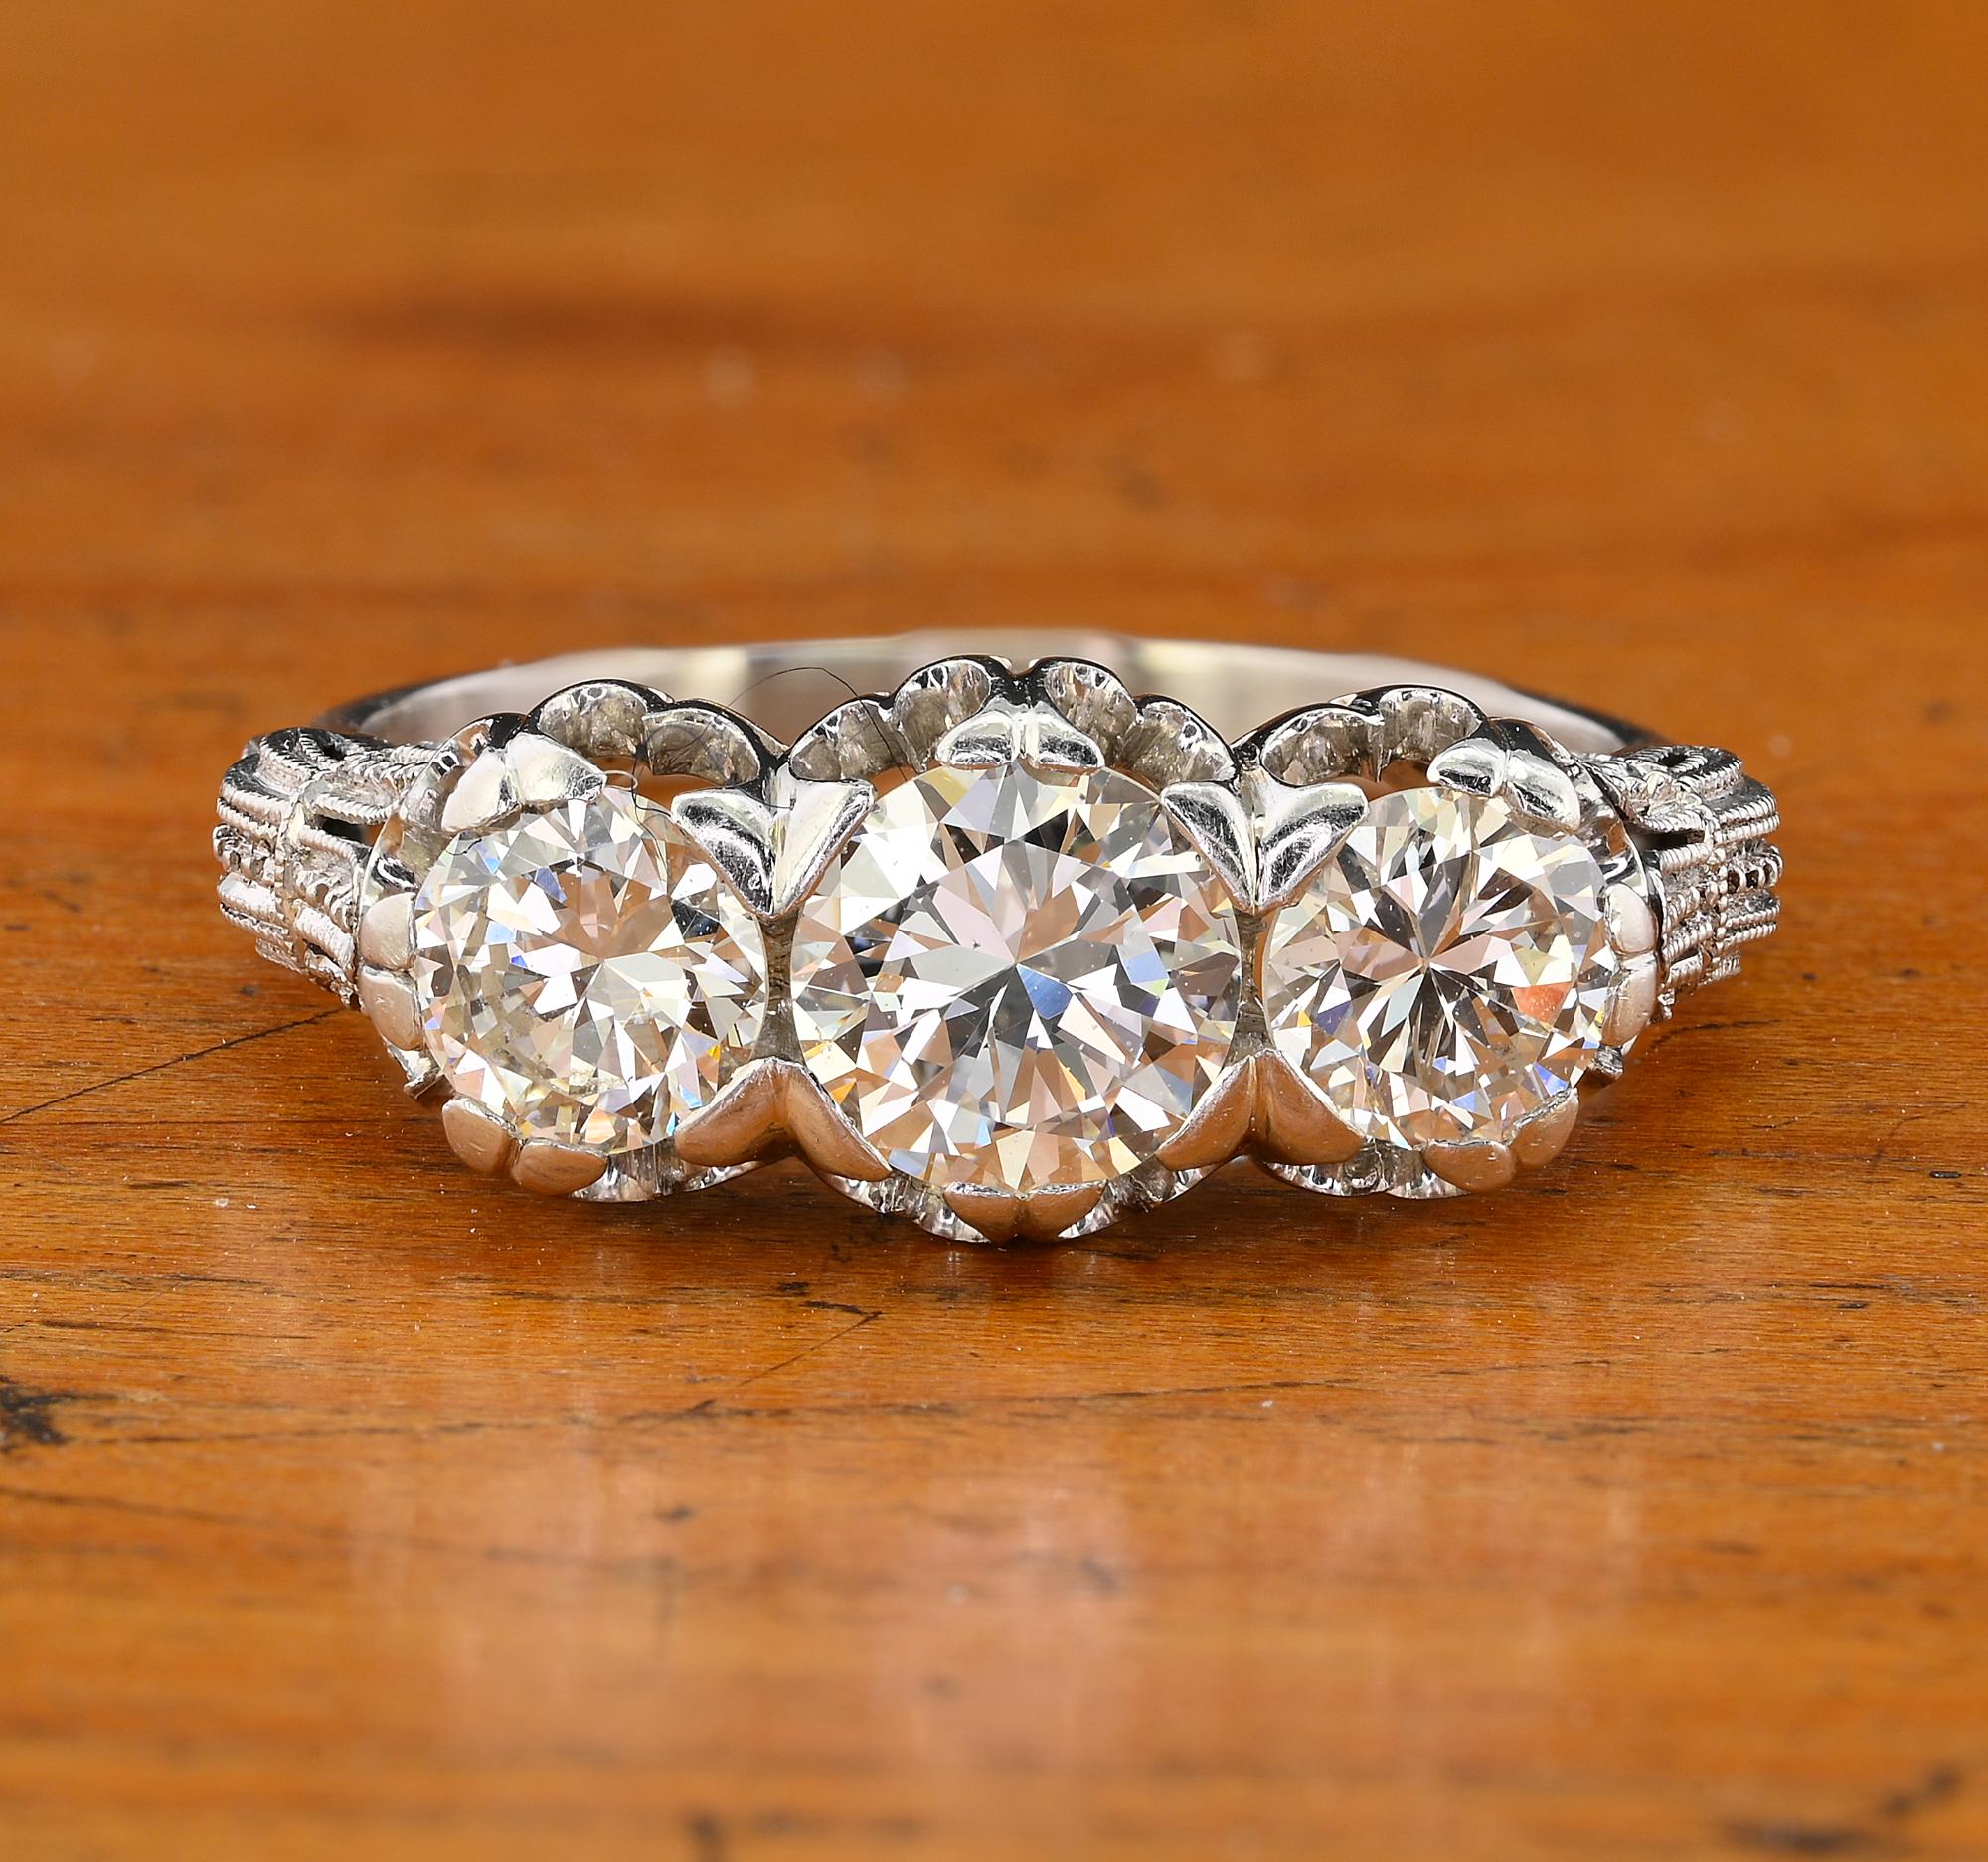 Dieser herausragende antike Diamantring stammt aus der Zeit des Art déco, ca. 1925
Ein unverwechselbares Beispiel für die Epoche, das in exquisiter Handarbeit aus massivem Platin gefertigt wurde und ein mehr als exquisites Design aufweist.
Gesetzt